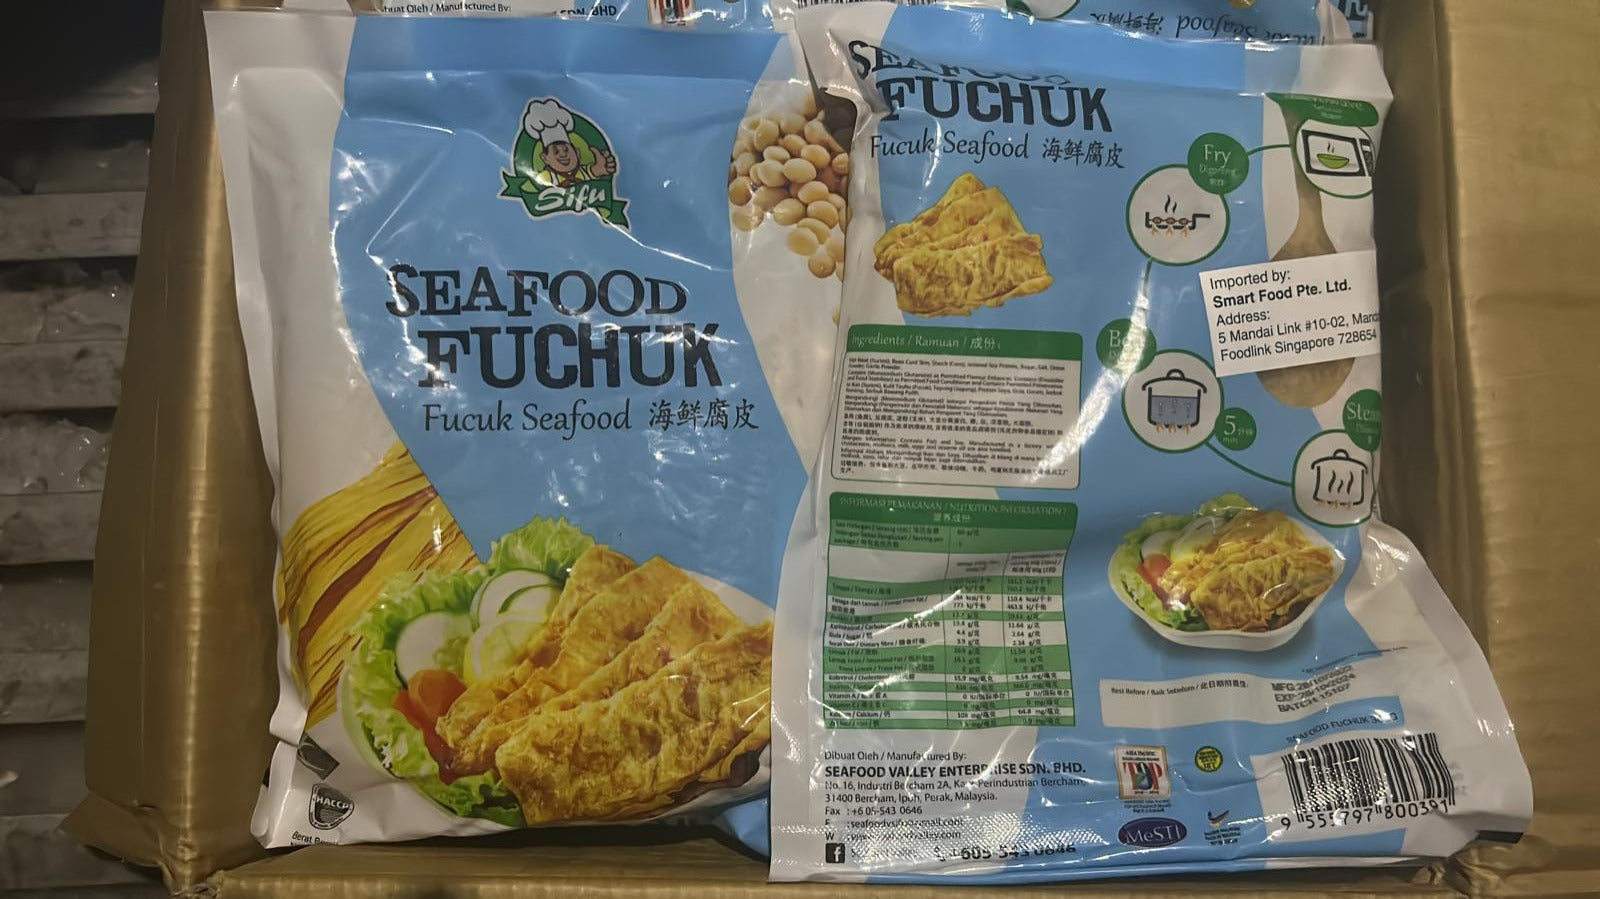 Seafood Fuchuk (300g).